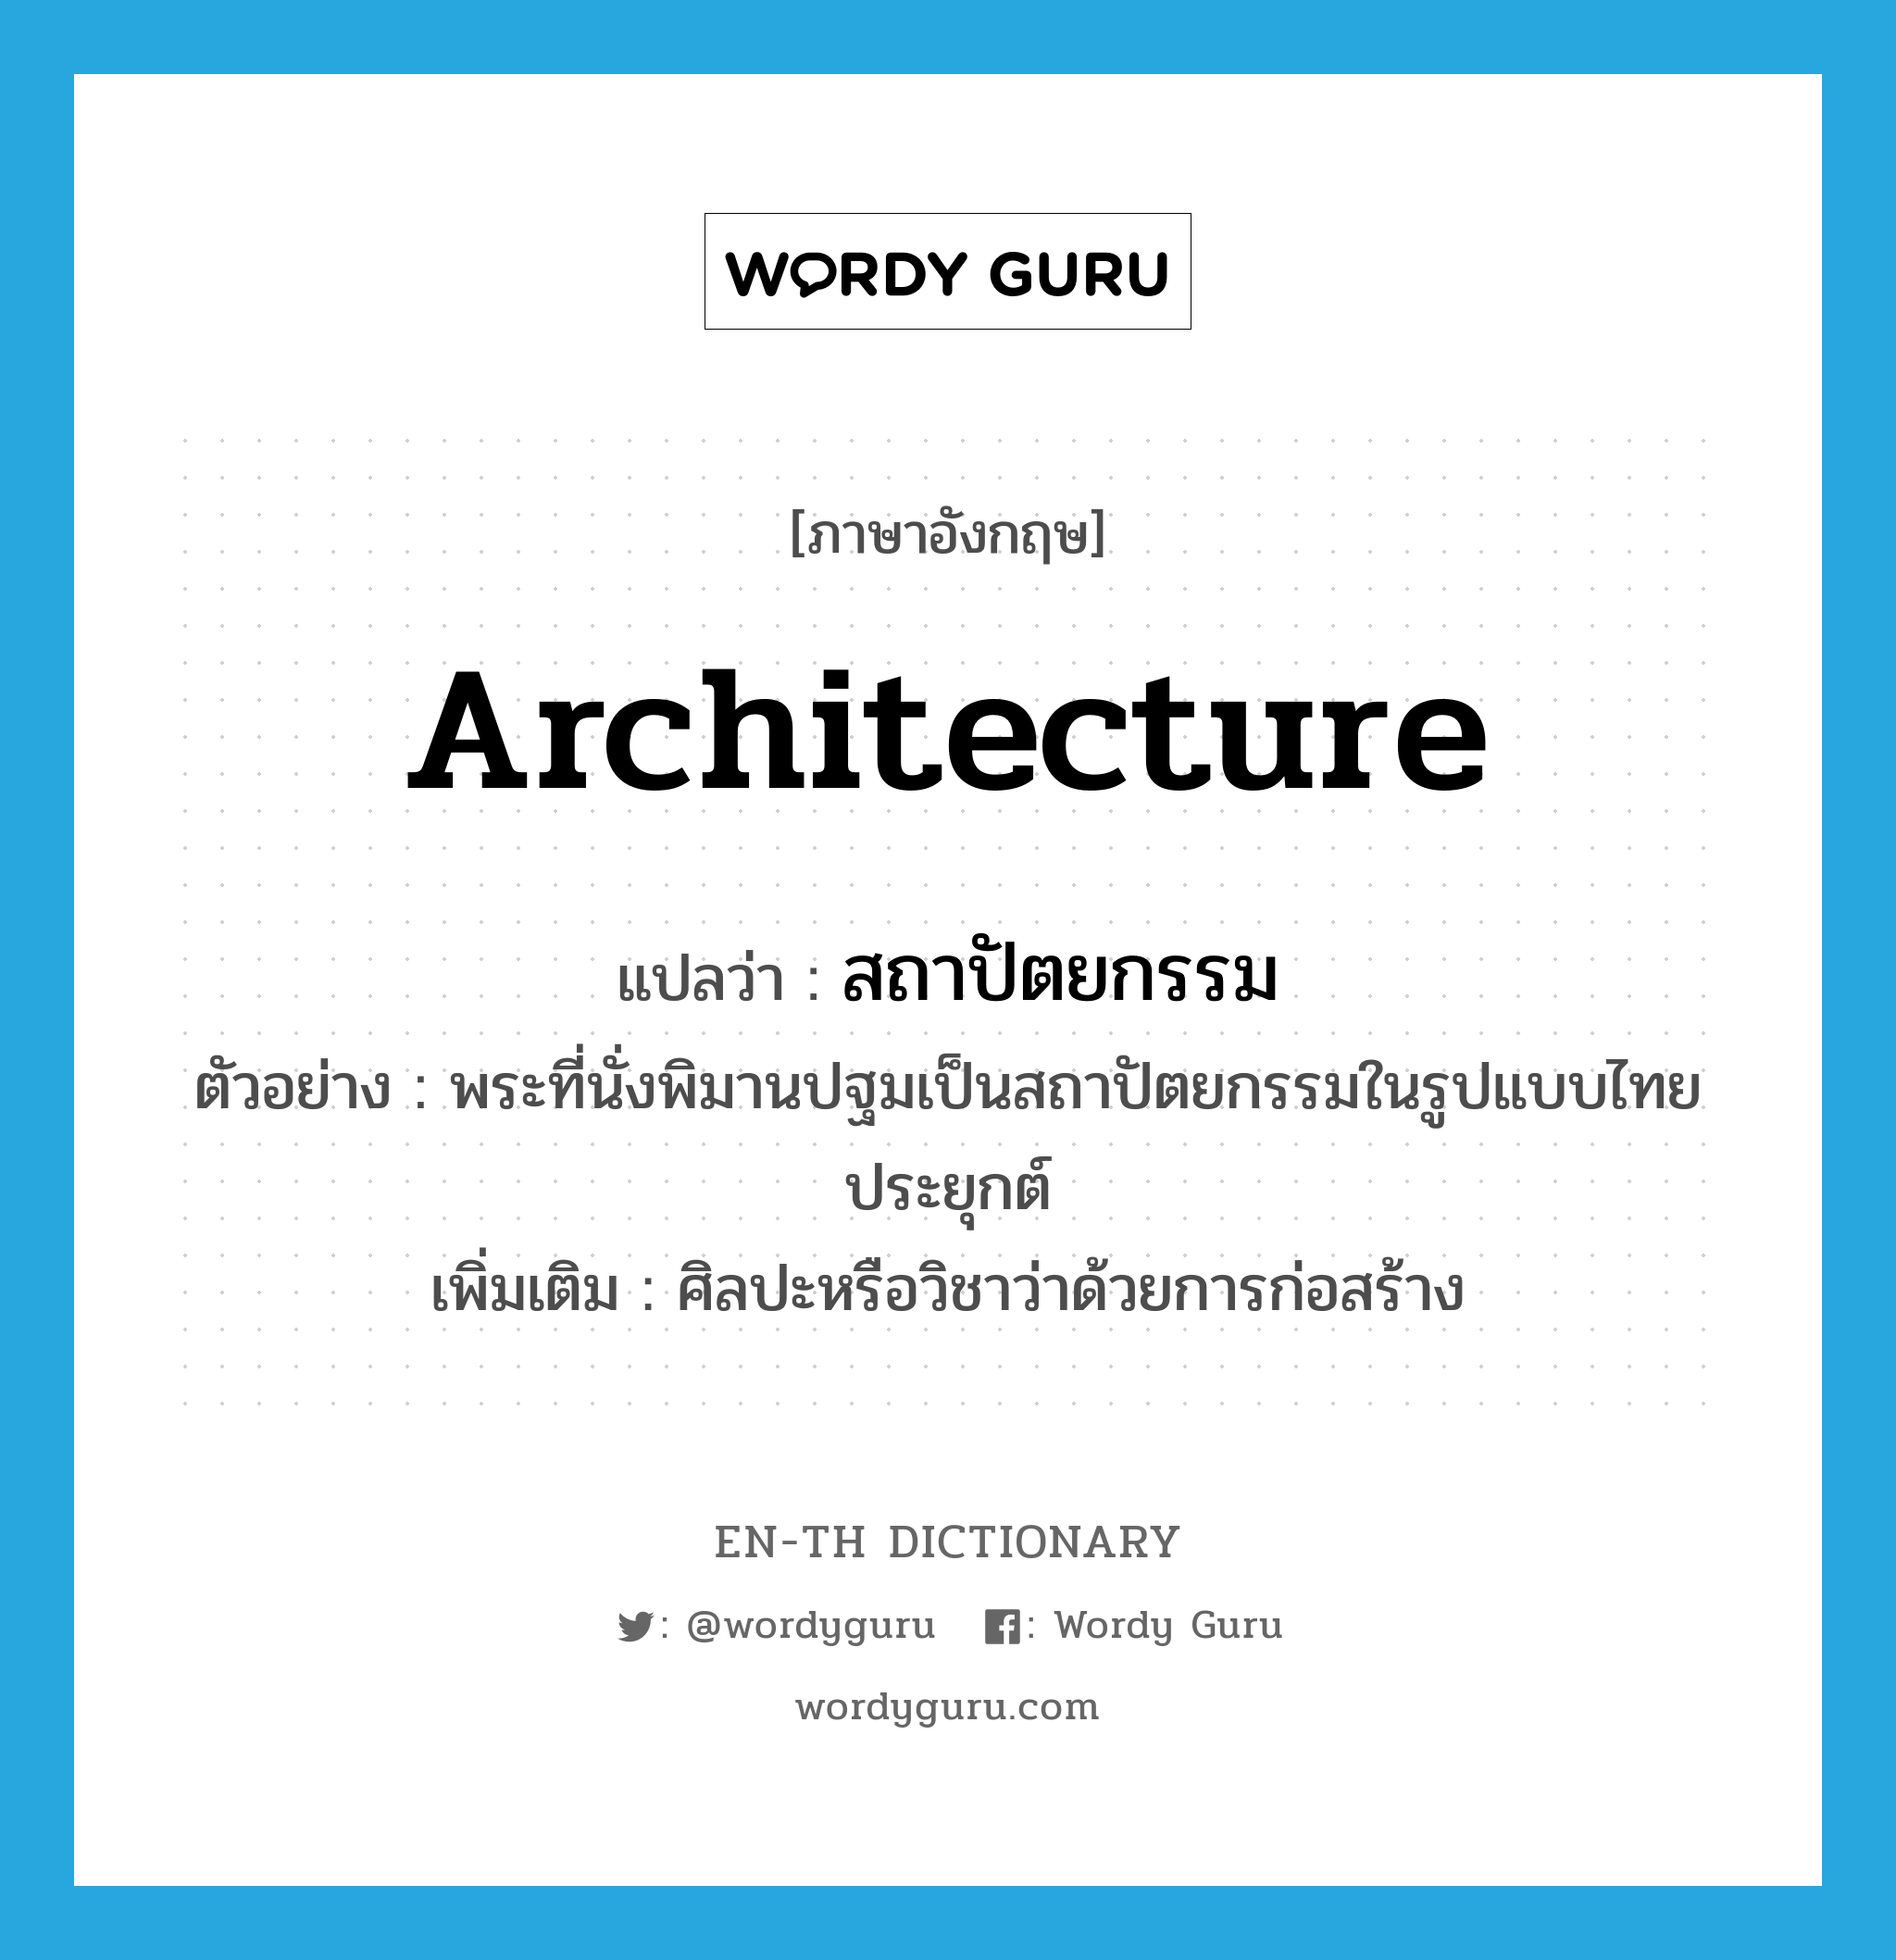 architecture แปลว่า?, คำศัพท์ภาษาอังกฤษ architecture แปลว่า สถาปัตยกรรม ประเภท N ตัวอย่าง พระที่นั่งพิมานปฐมเป็นสถาปัตยกรรมในรูปแบบไทยประยุกต์ เพิ่มเติม ศิลปะหรือวิชาว่าด้วยการก่อสร้าง หมวด N